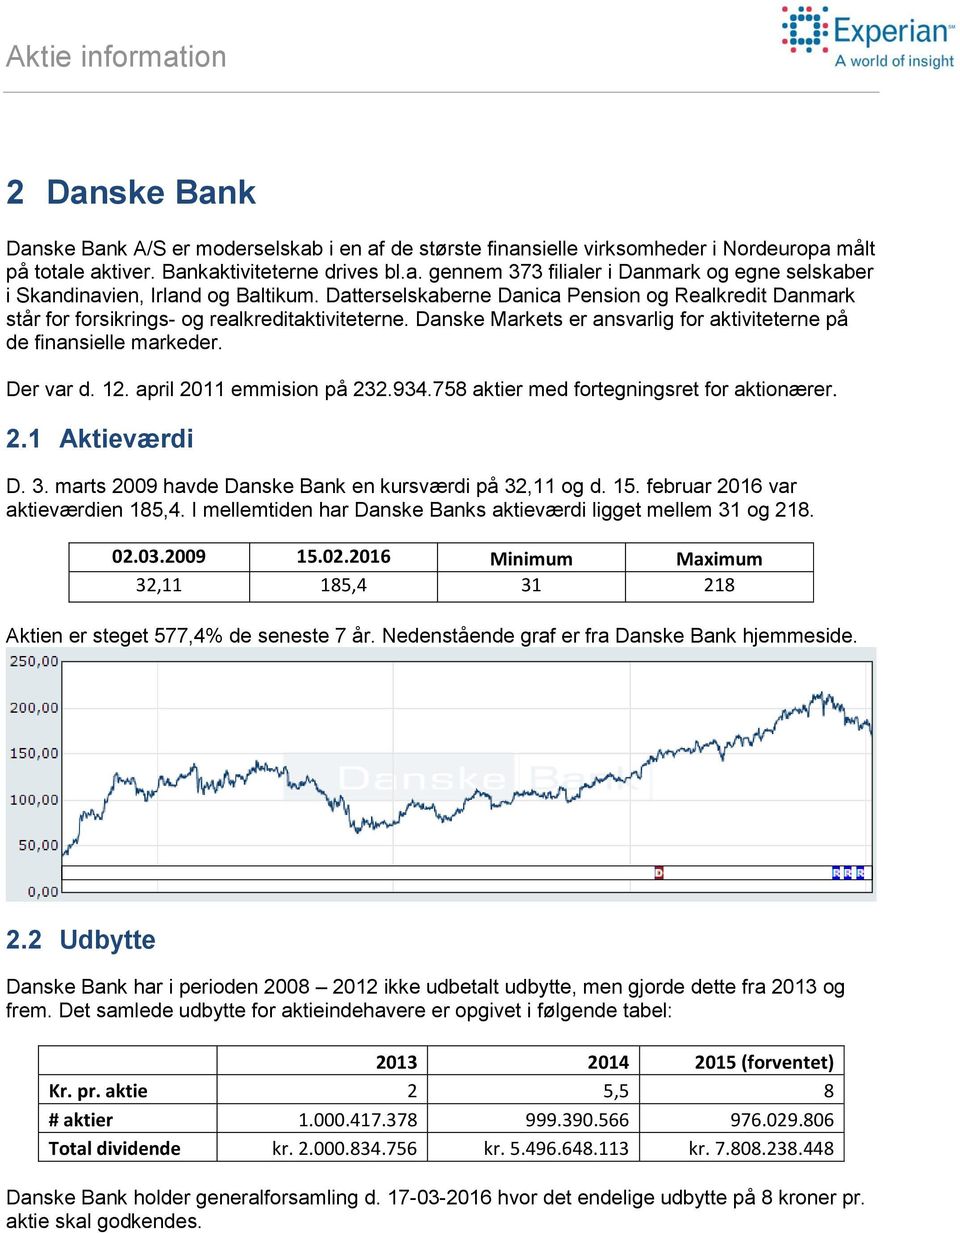 april 2011 emmision på 232.934.758 aktier med fortegningsret for aktionærer. 2.1 Aktieværdi D. 3. marts 2009 havde Danske Bank en kursværdi på 32,11 og d. 15. februar 2016 var aktieværdien 185,4.